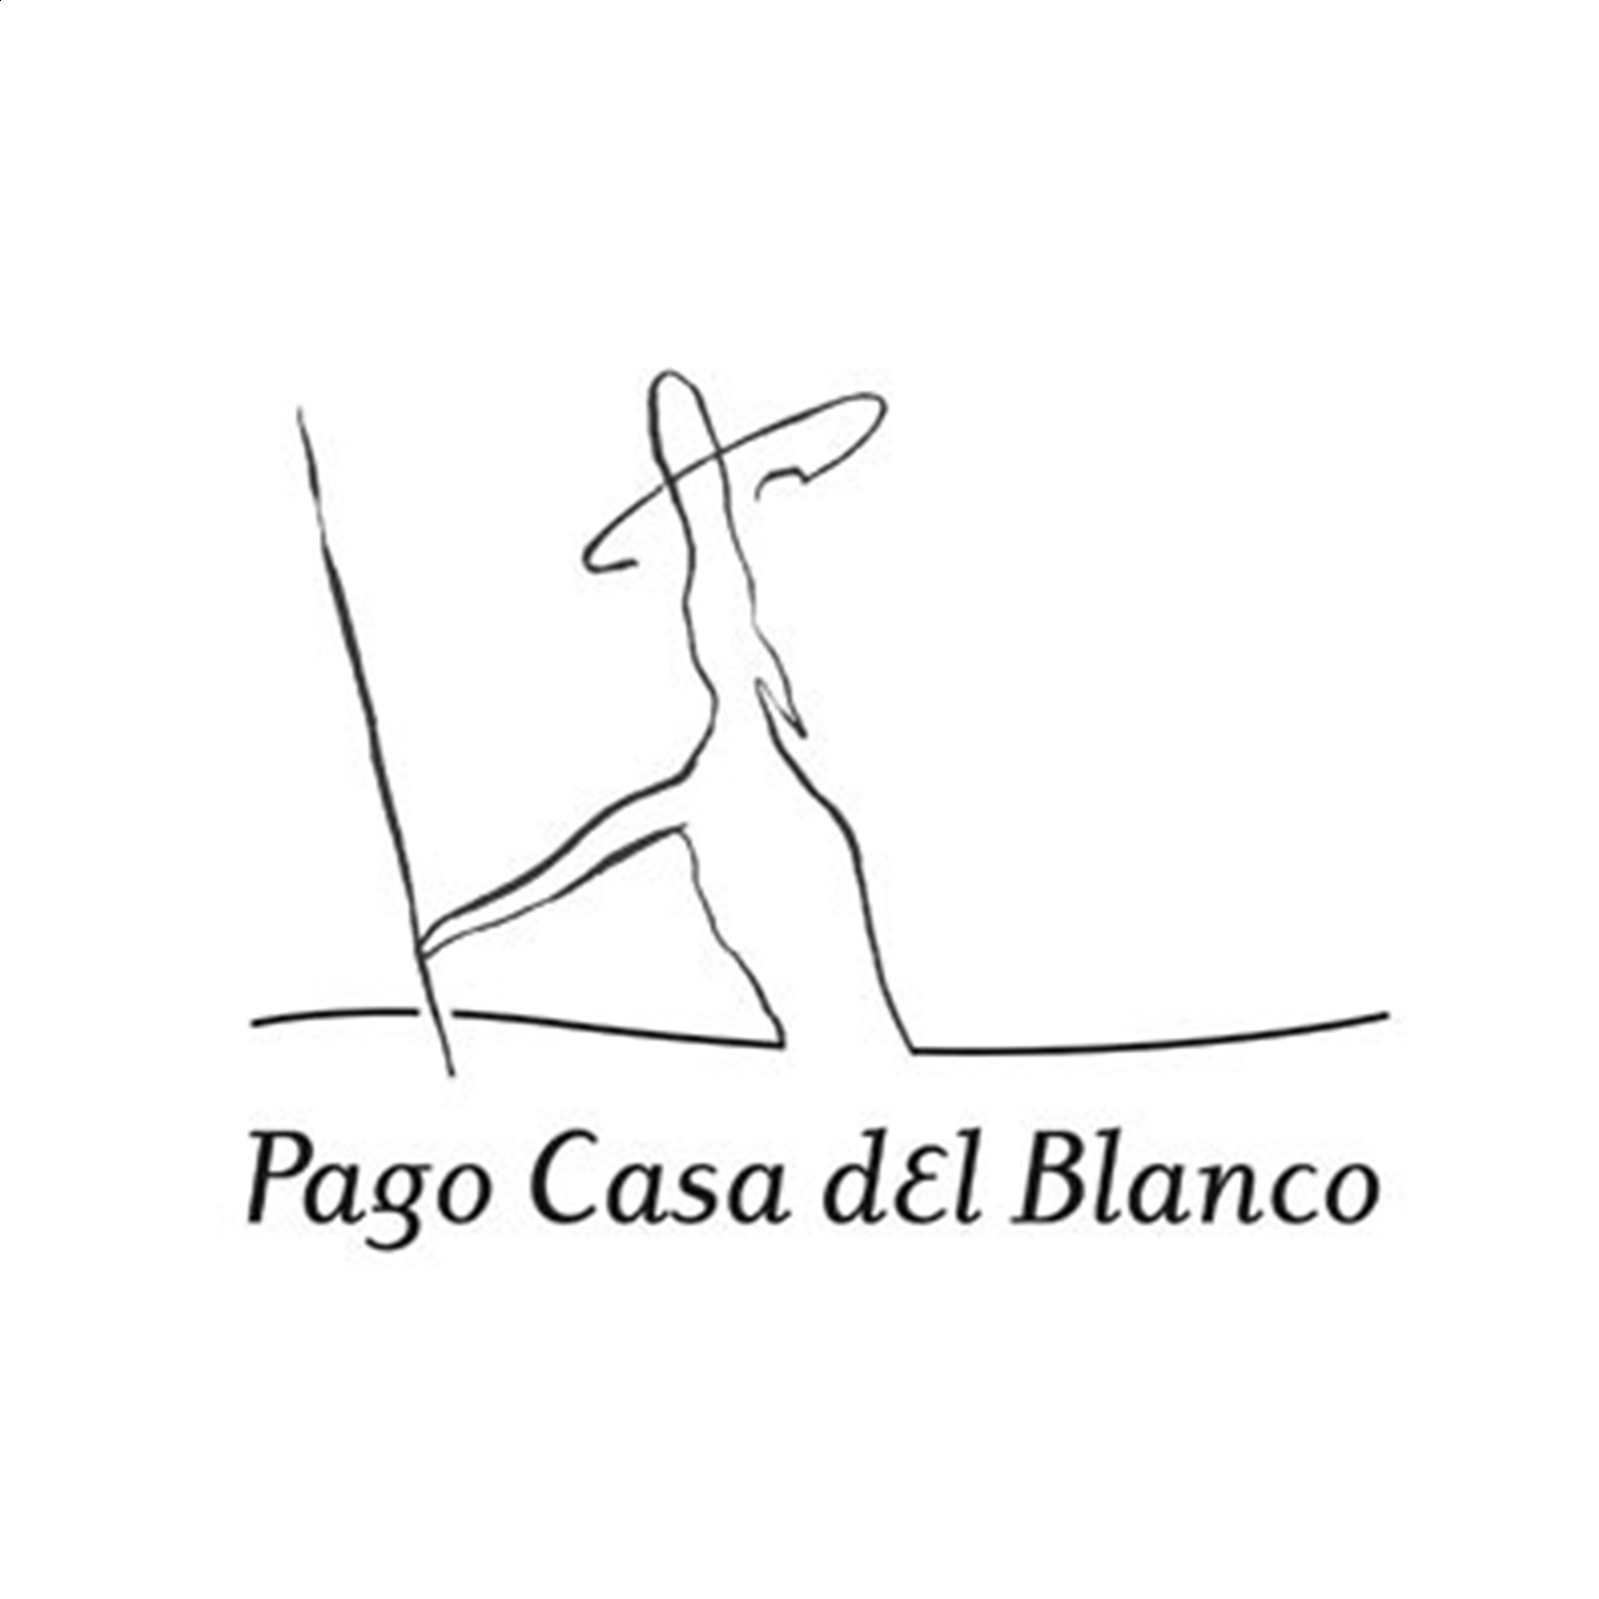 Bodega Pago Casa del Blanco - Vino tinto Quixote 2016 D.O.P. Pago Casa del Blanco 75cl, 6uds